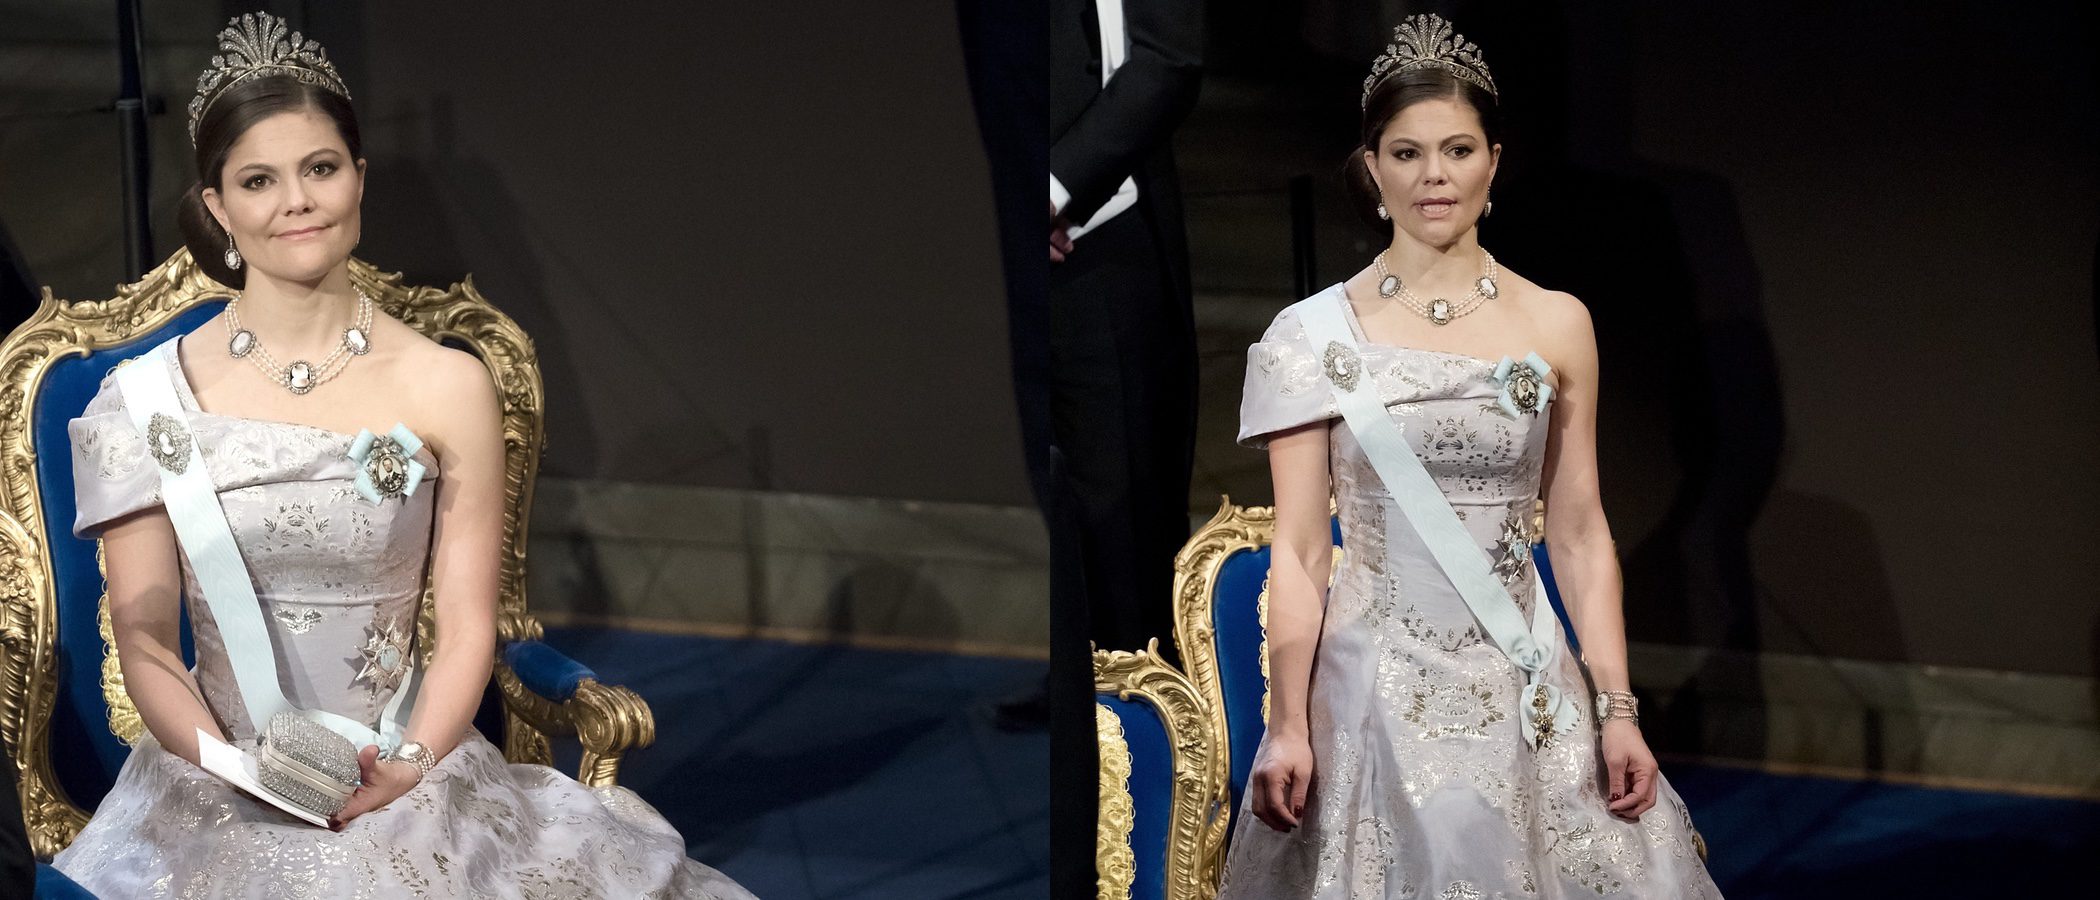 La Princesa Victoria de Suecia diseñará ropa low cost para niños con H&M